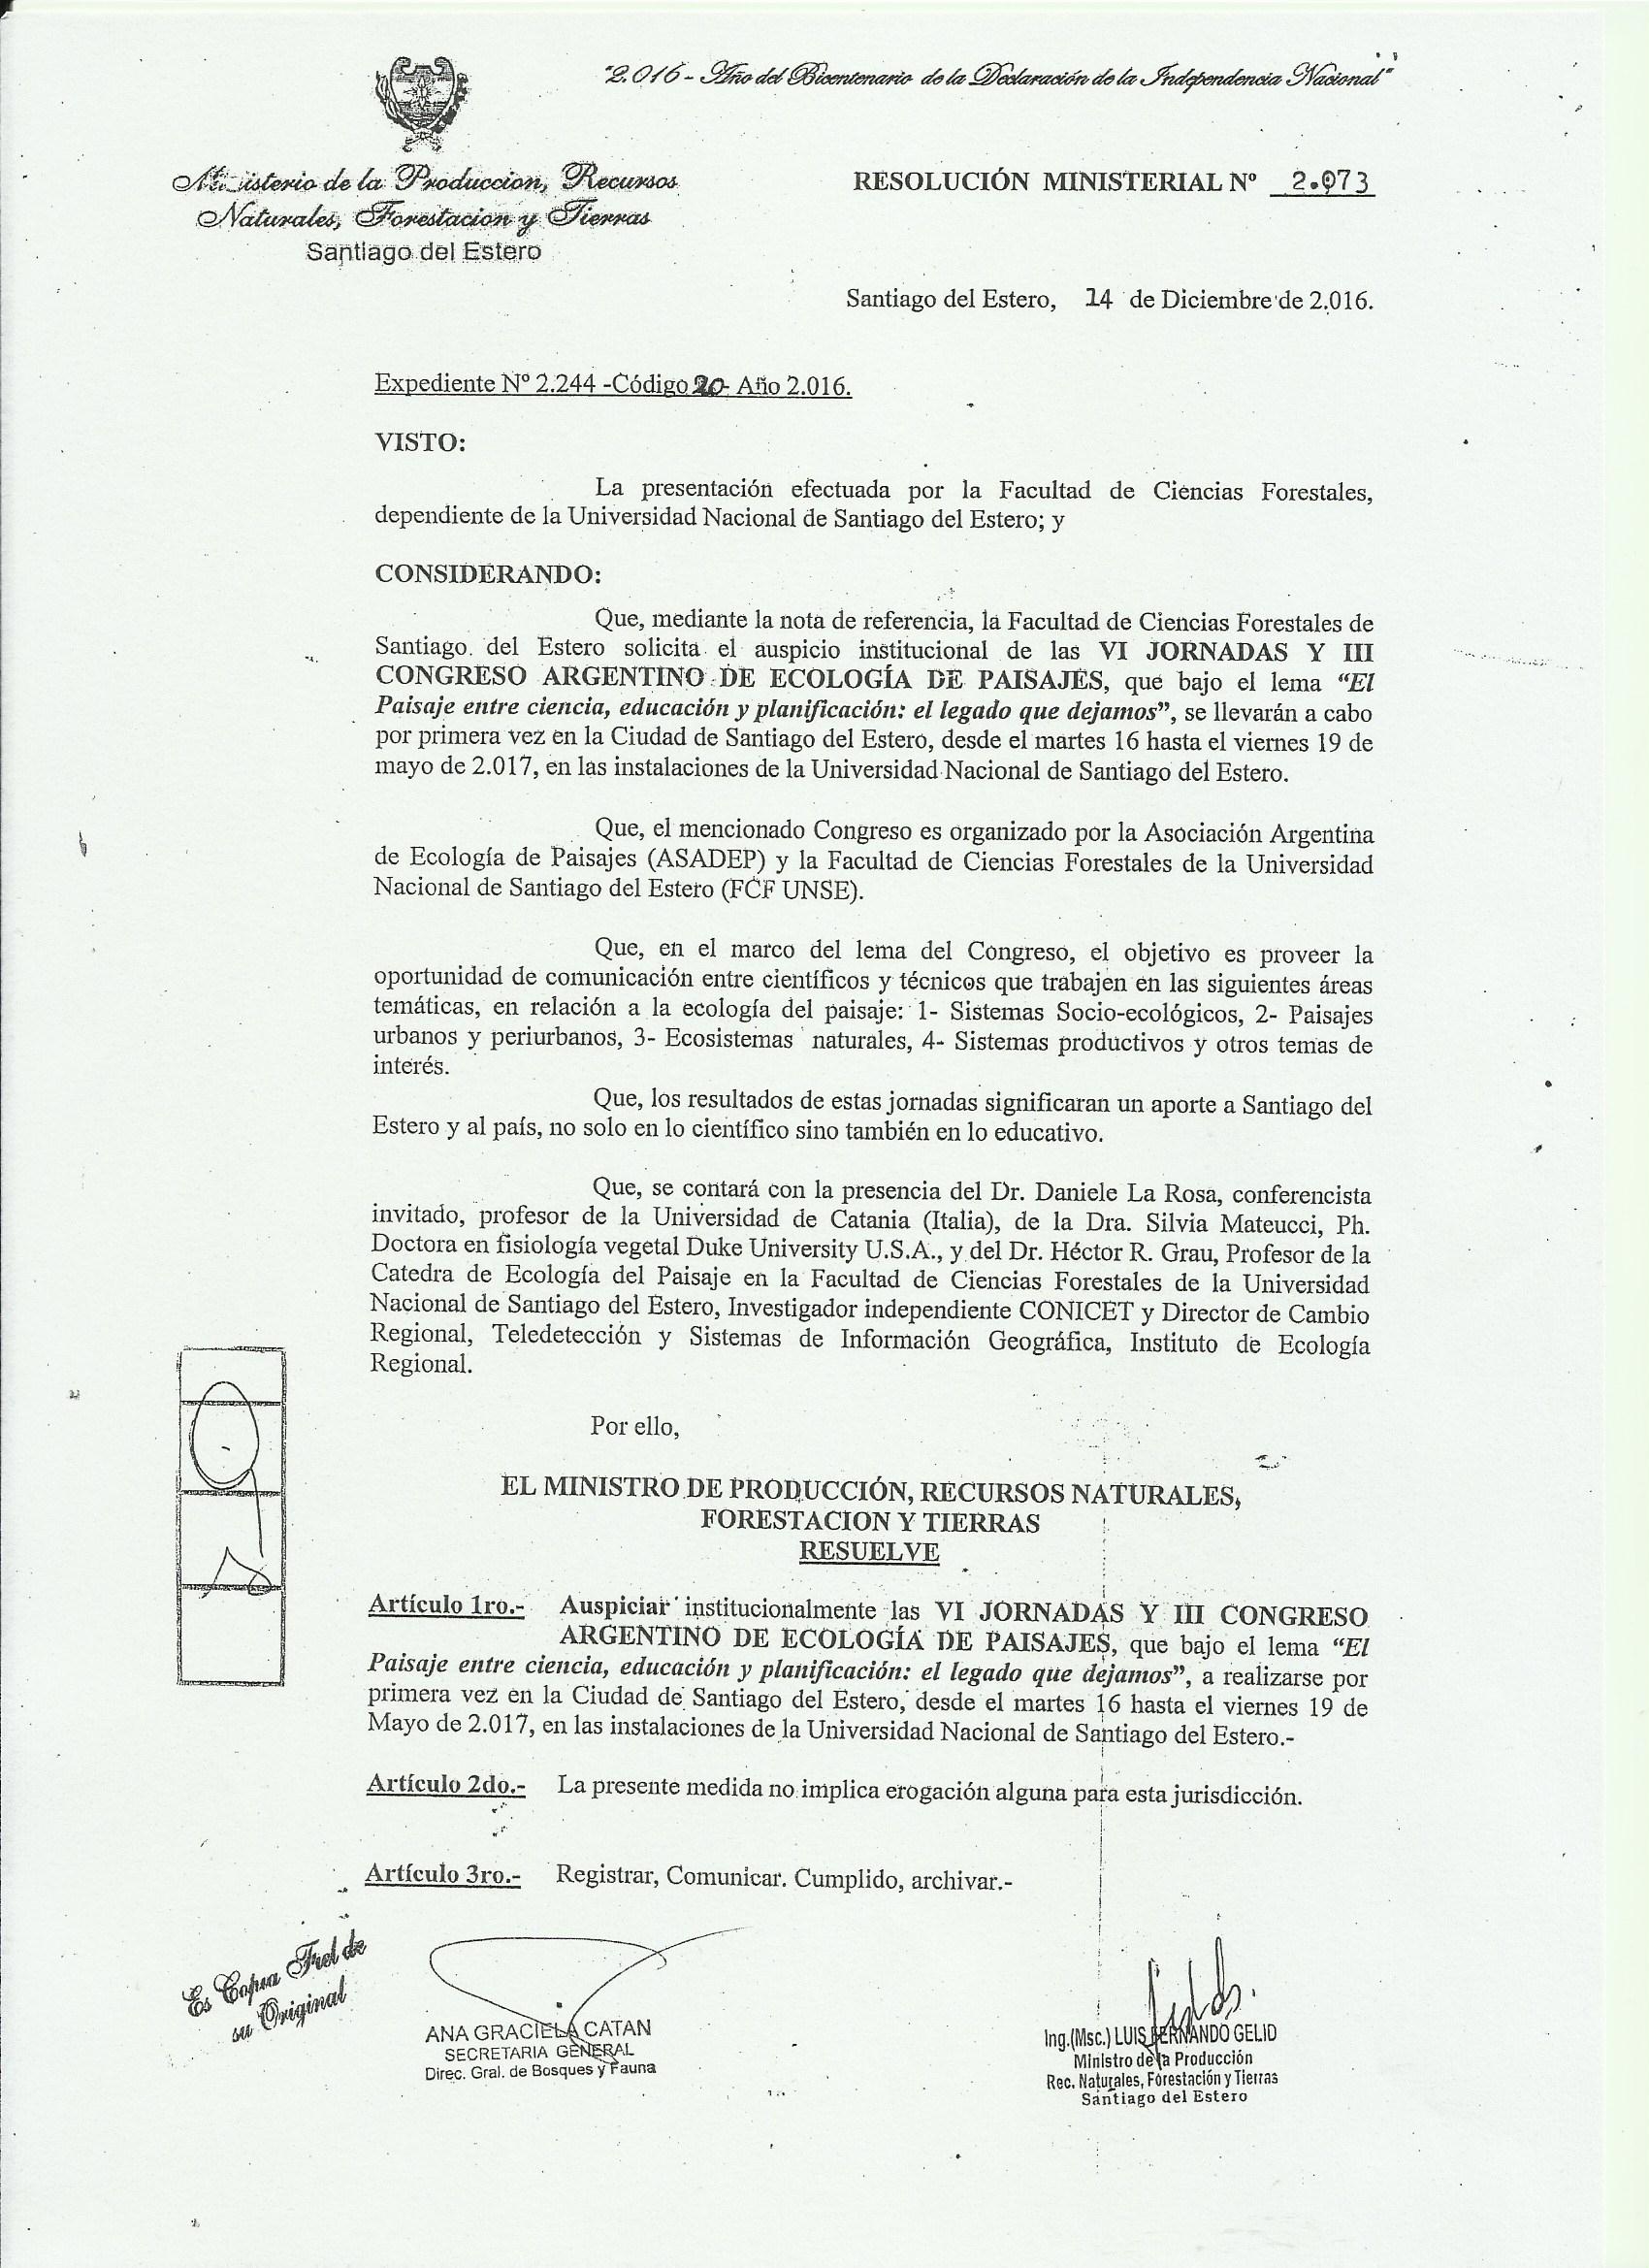 Declaración de interés: Ministerio de la Producción, Recursos Naturales, Forestación y Tierras de Santiago del Estero